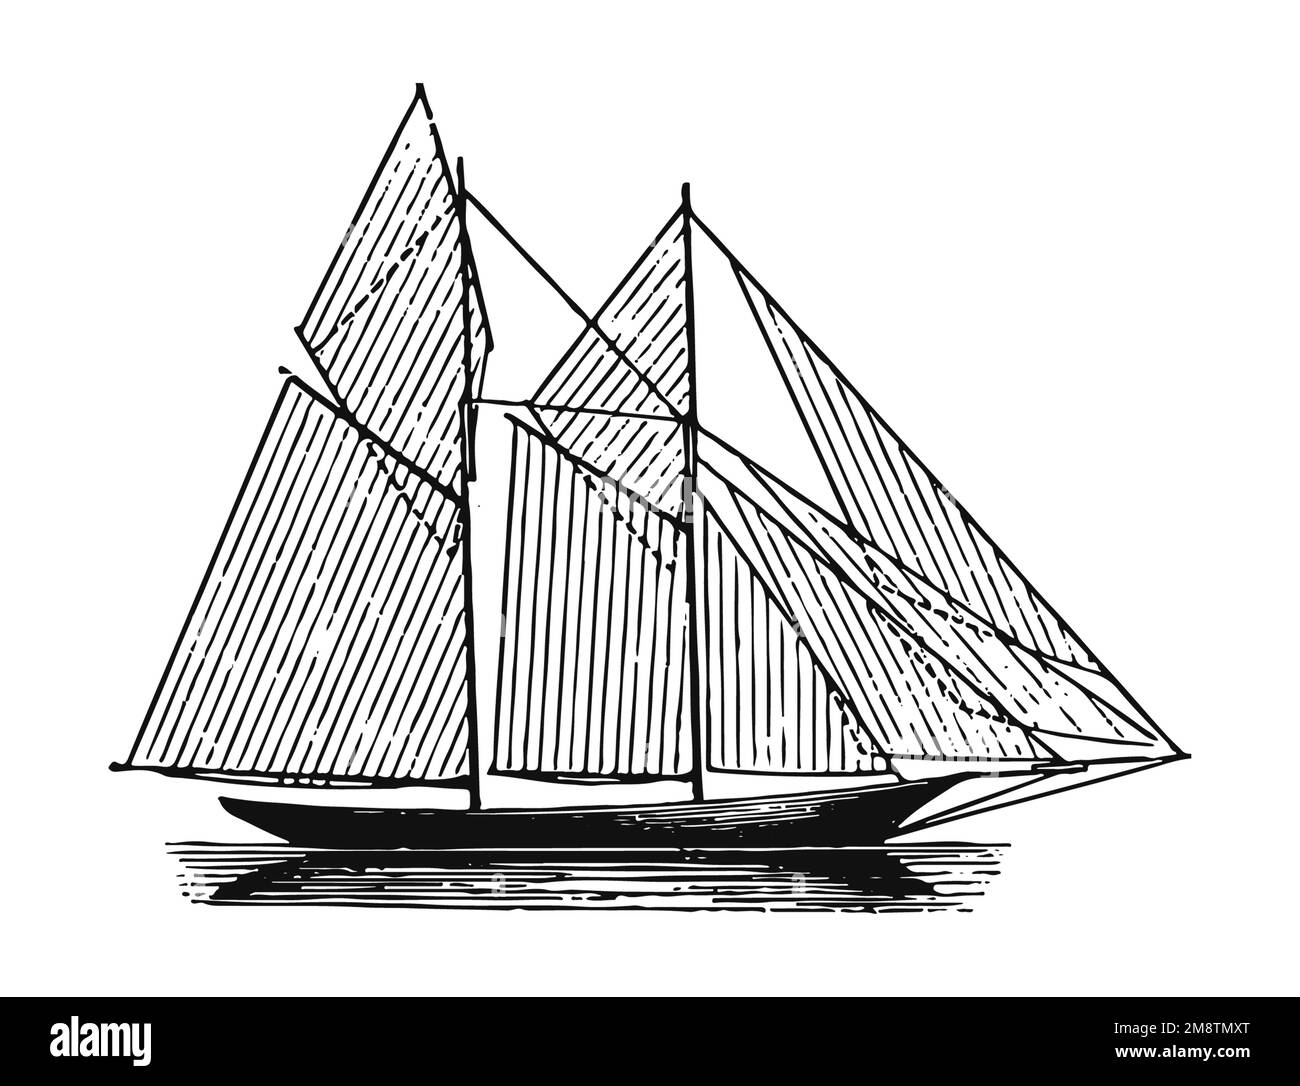 Ancien bateau de pêche, illustration ancienne Banque D'Images